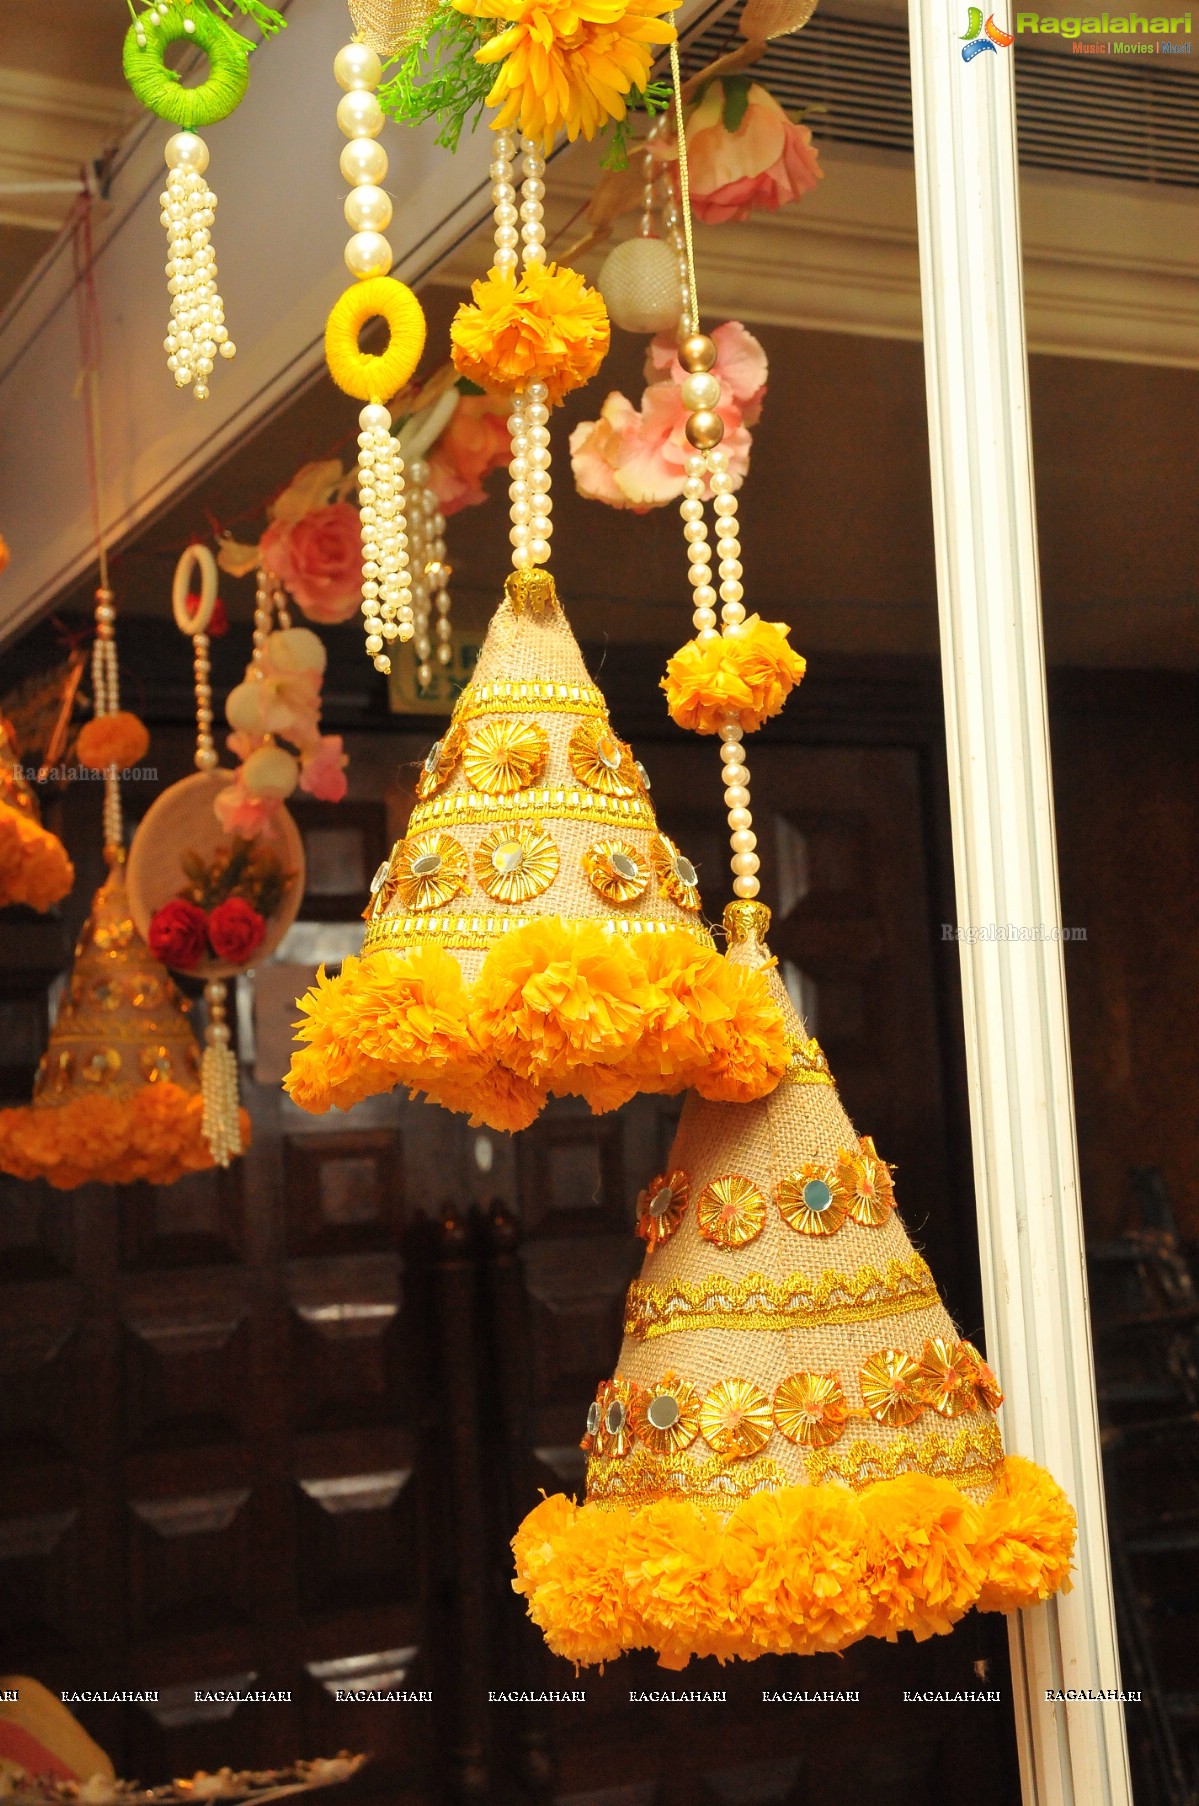 Petals Exhibition and Sale at Taj Krishna, Hyderabad (Sep. 19, 2014)